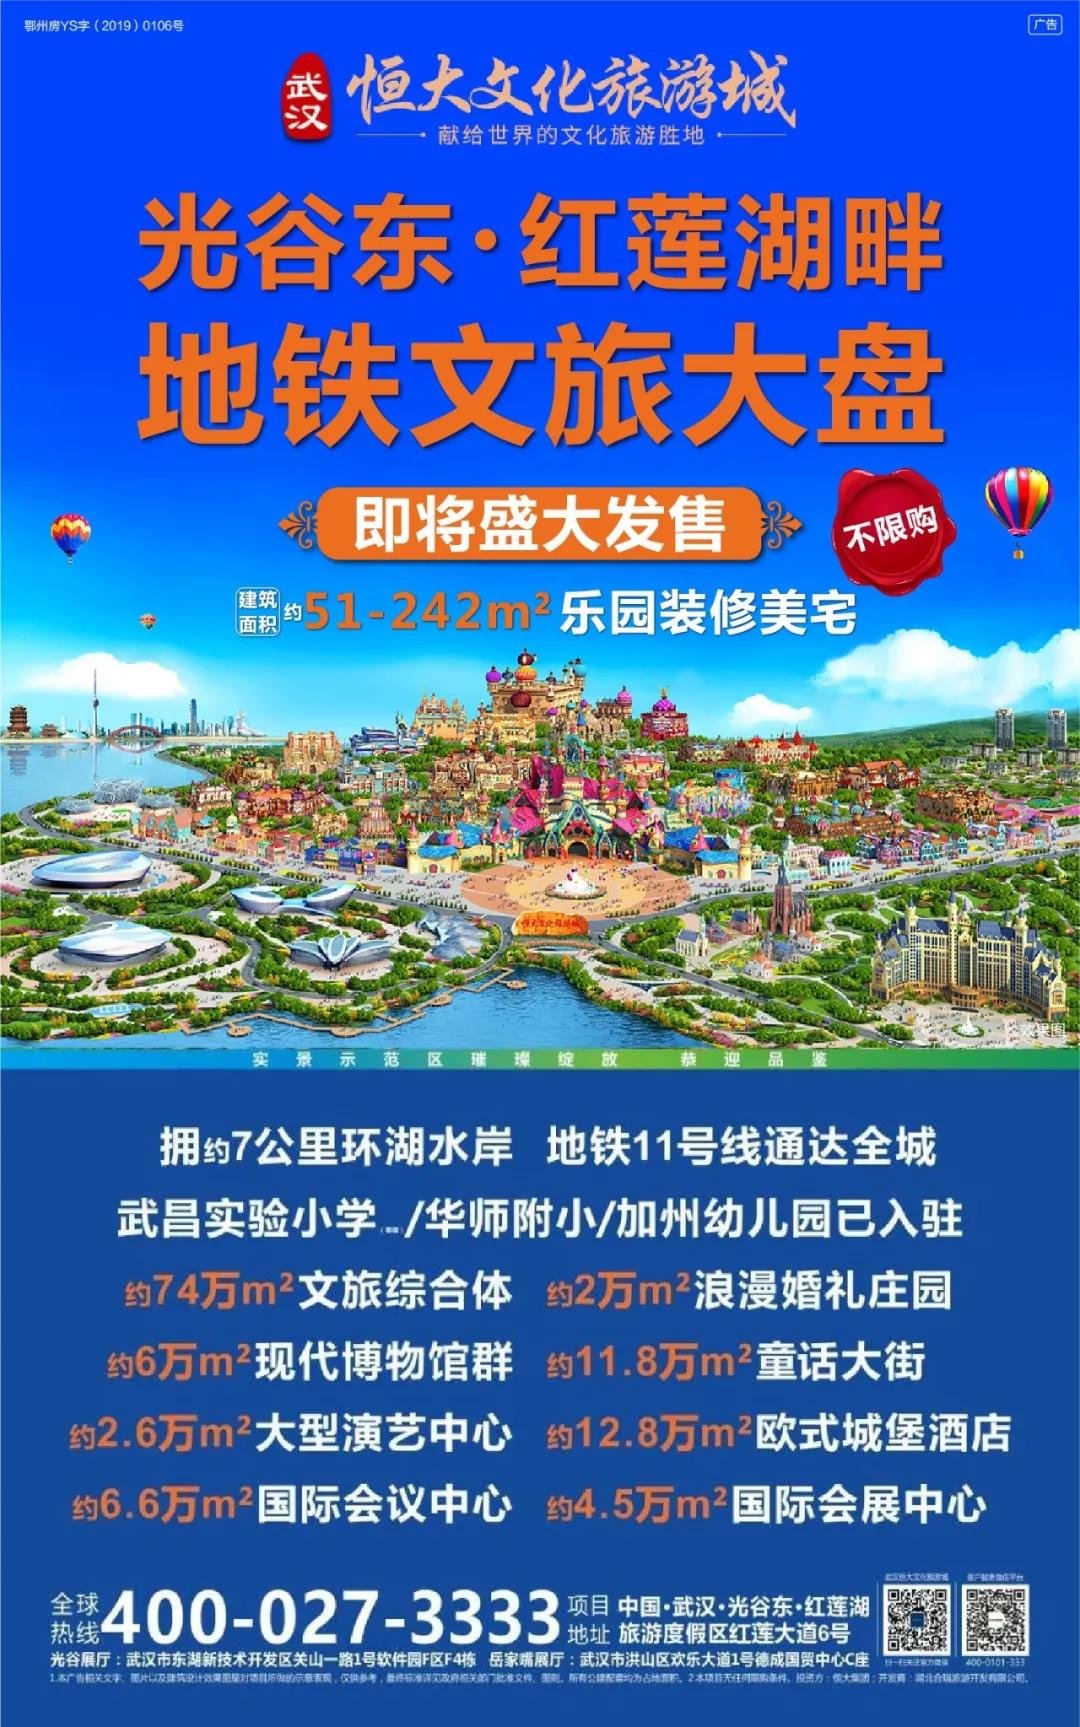 重磅利好！武昌实验寄宿小学签约进驻 武汉恒大文化旅游城即将盛大开盘！